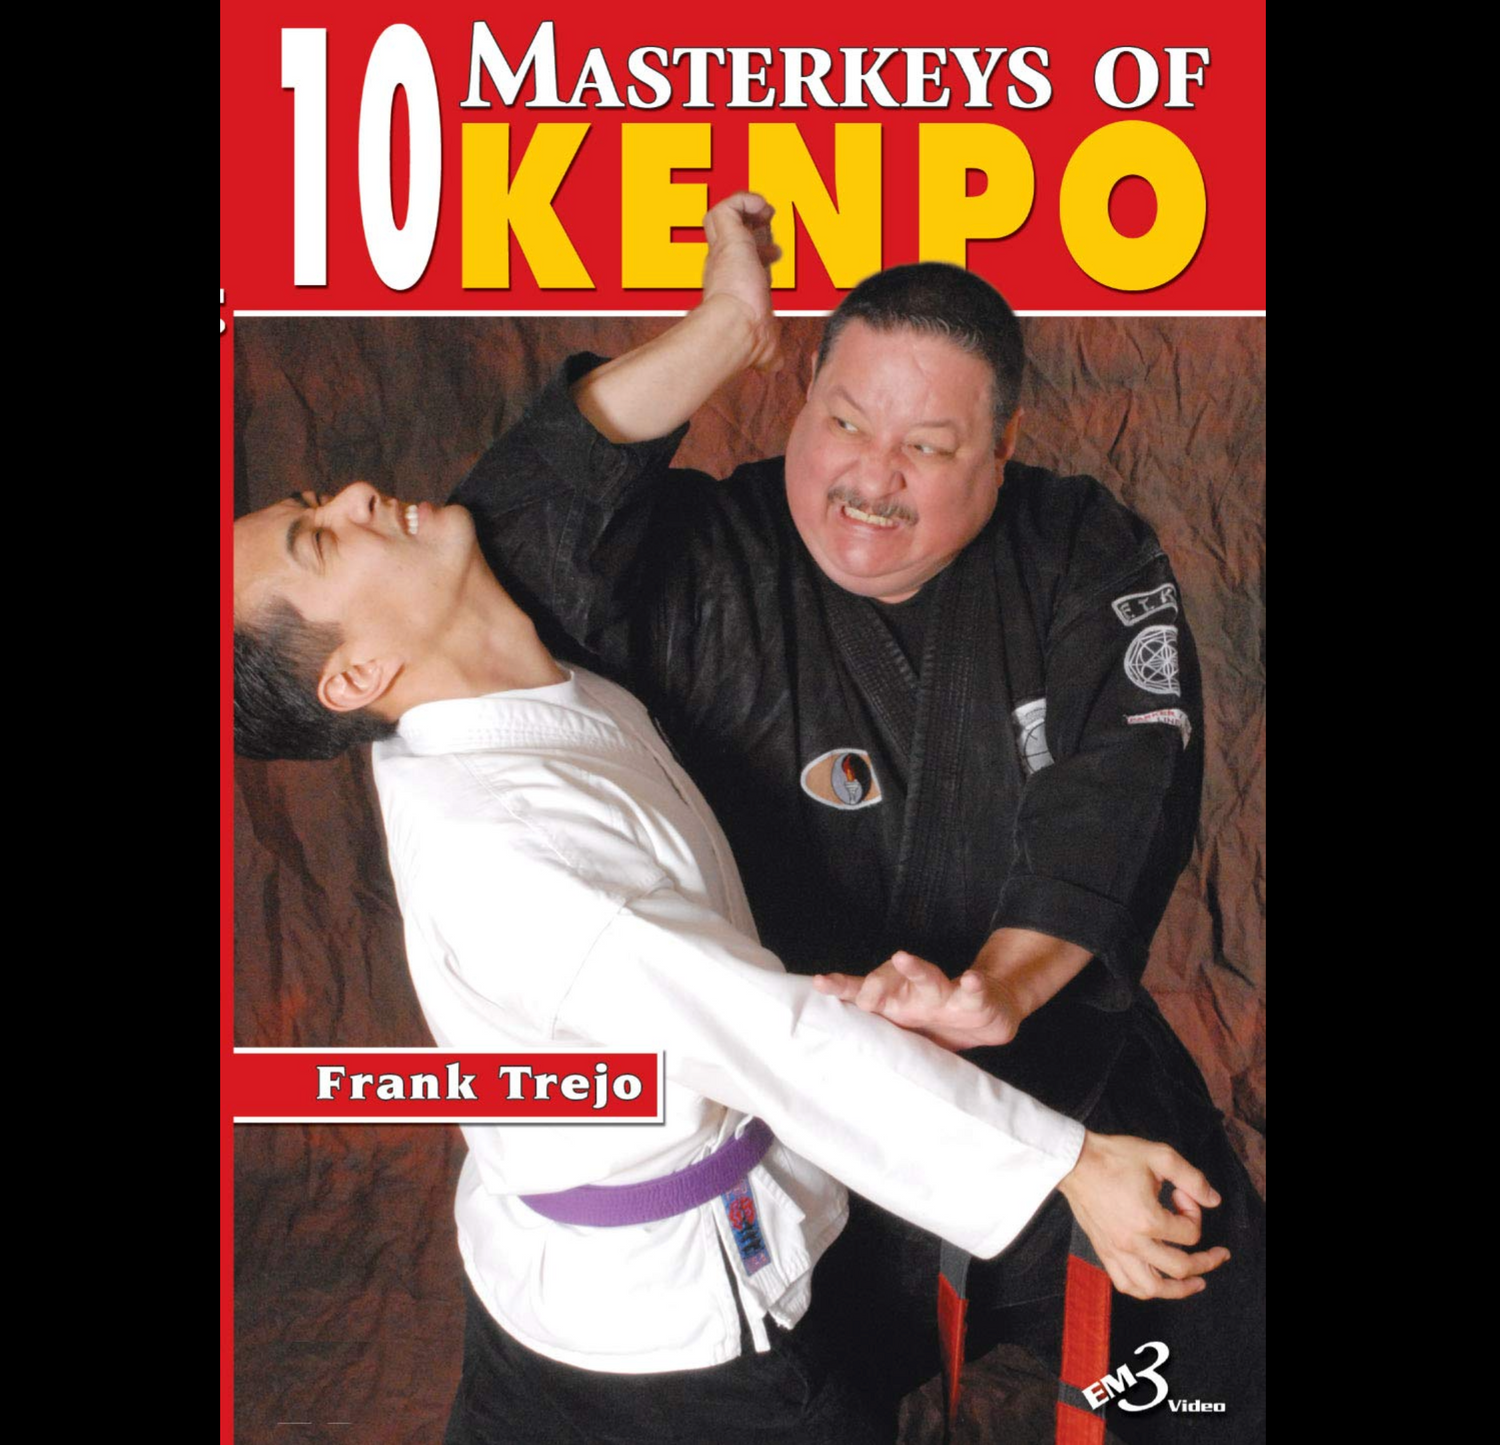 フランク・トレホによる拳法の 10 のマスターキー (オンデマンド)